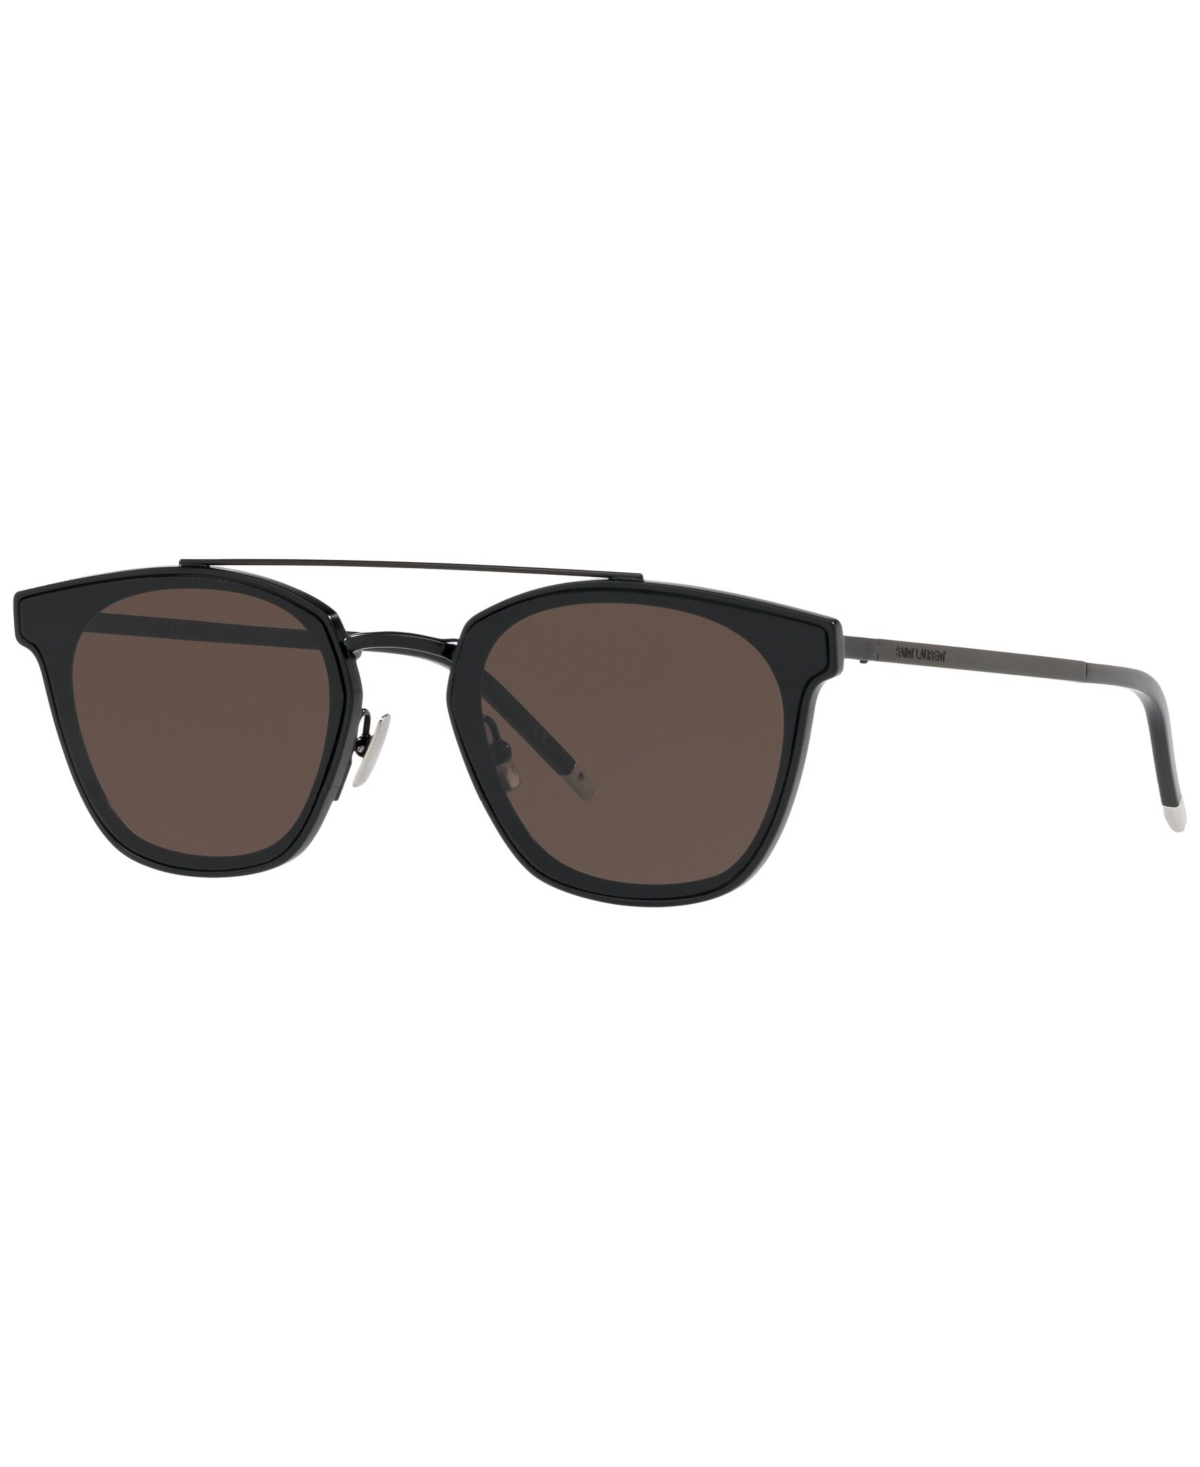 Saint Laurent Unisex Sunglasses, Sl 28 Metal In Black Matte